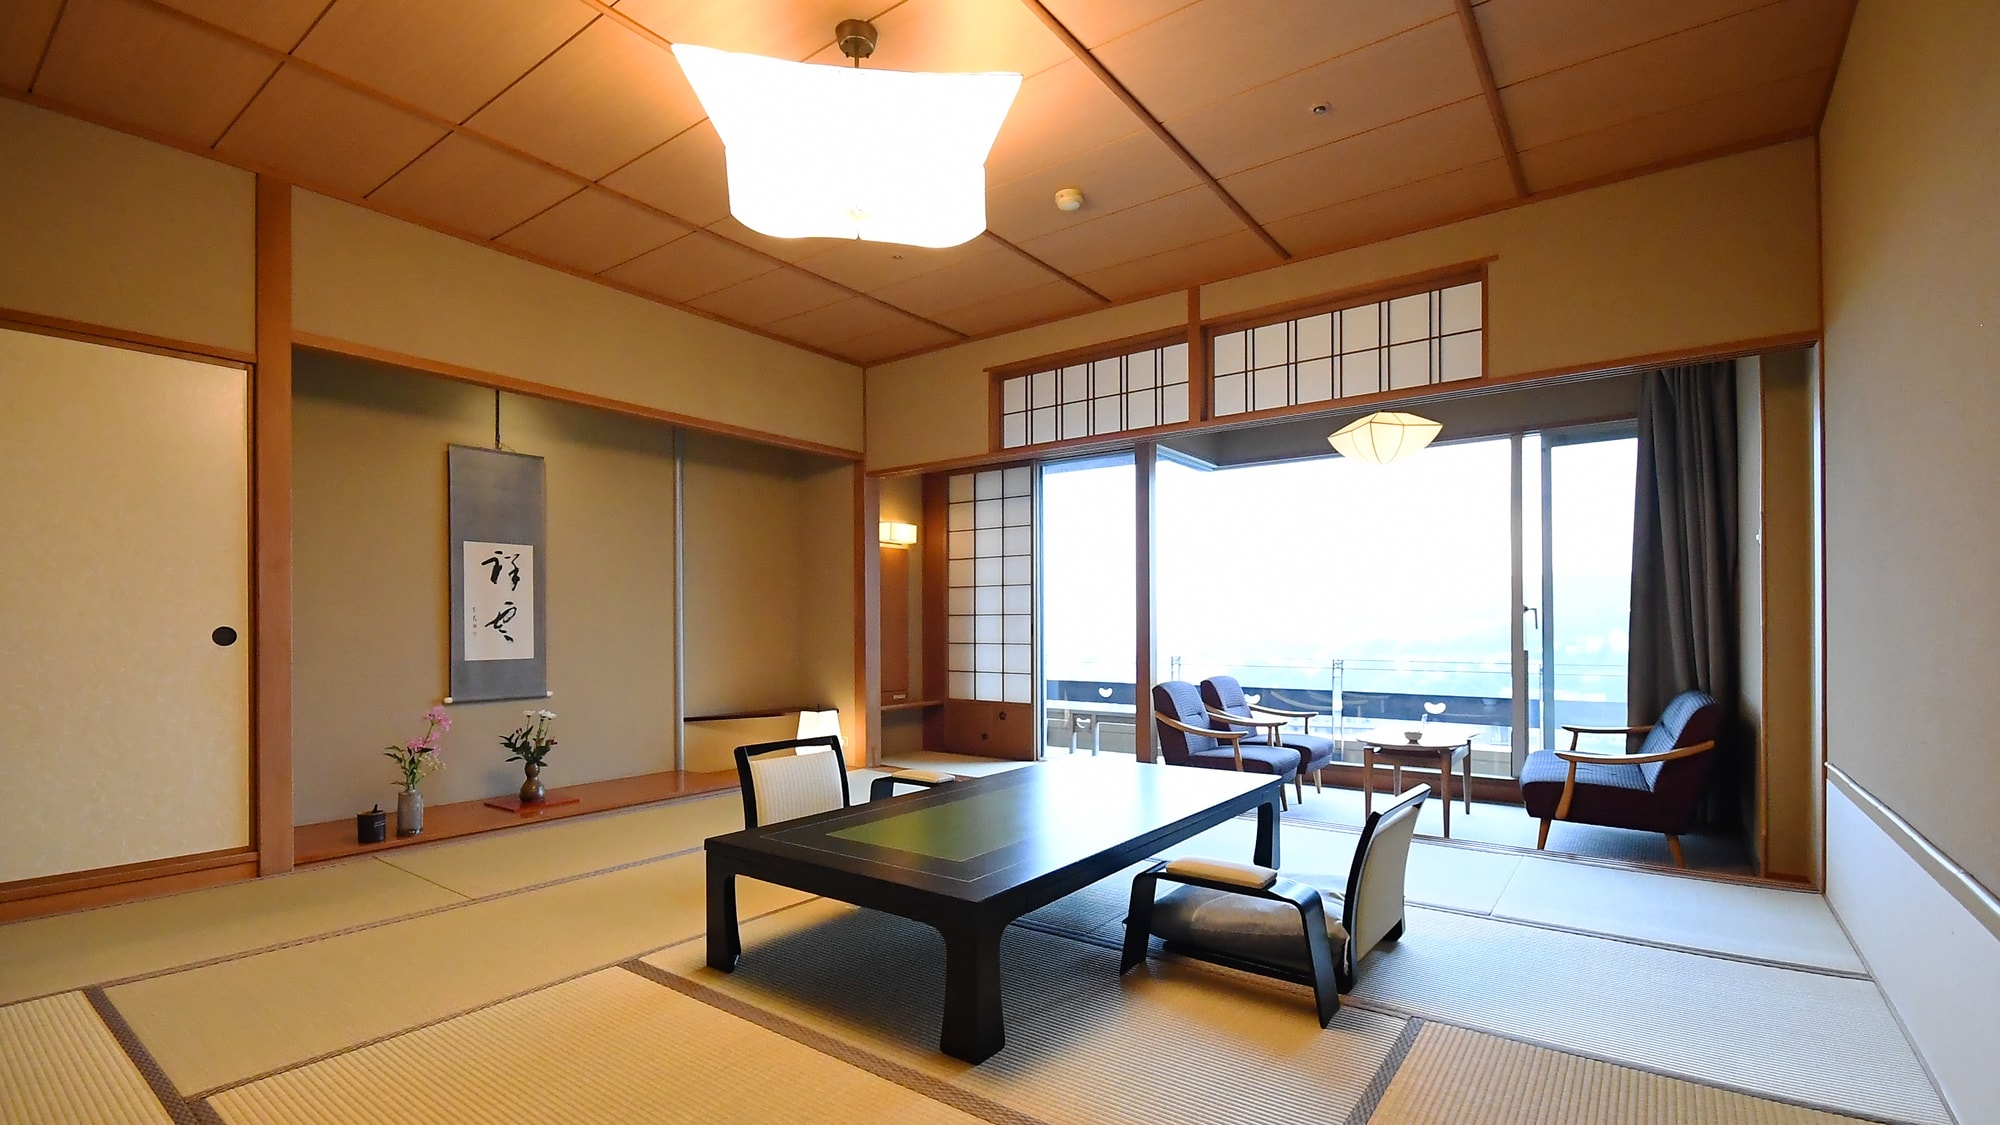 객실수는 스탠다드의 12.5 다다미의 일본식 방을 중심으로 42실. 온천 노천탕이 있는 객실은 9실 준비되어 있습니다.